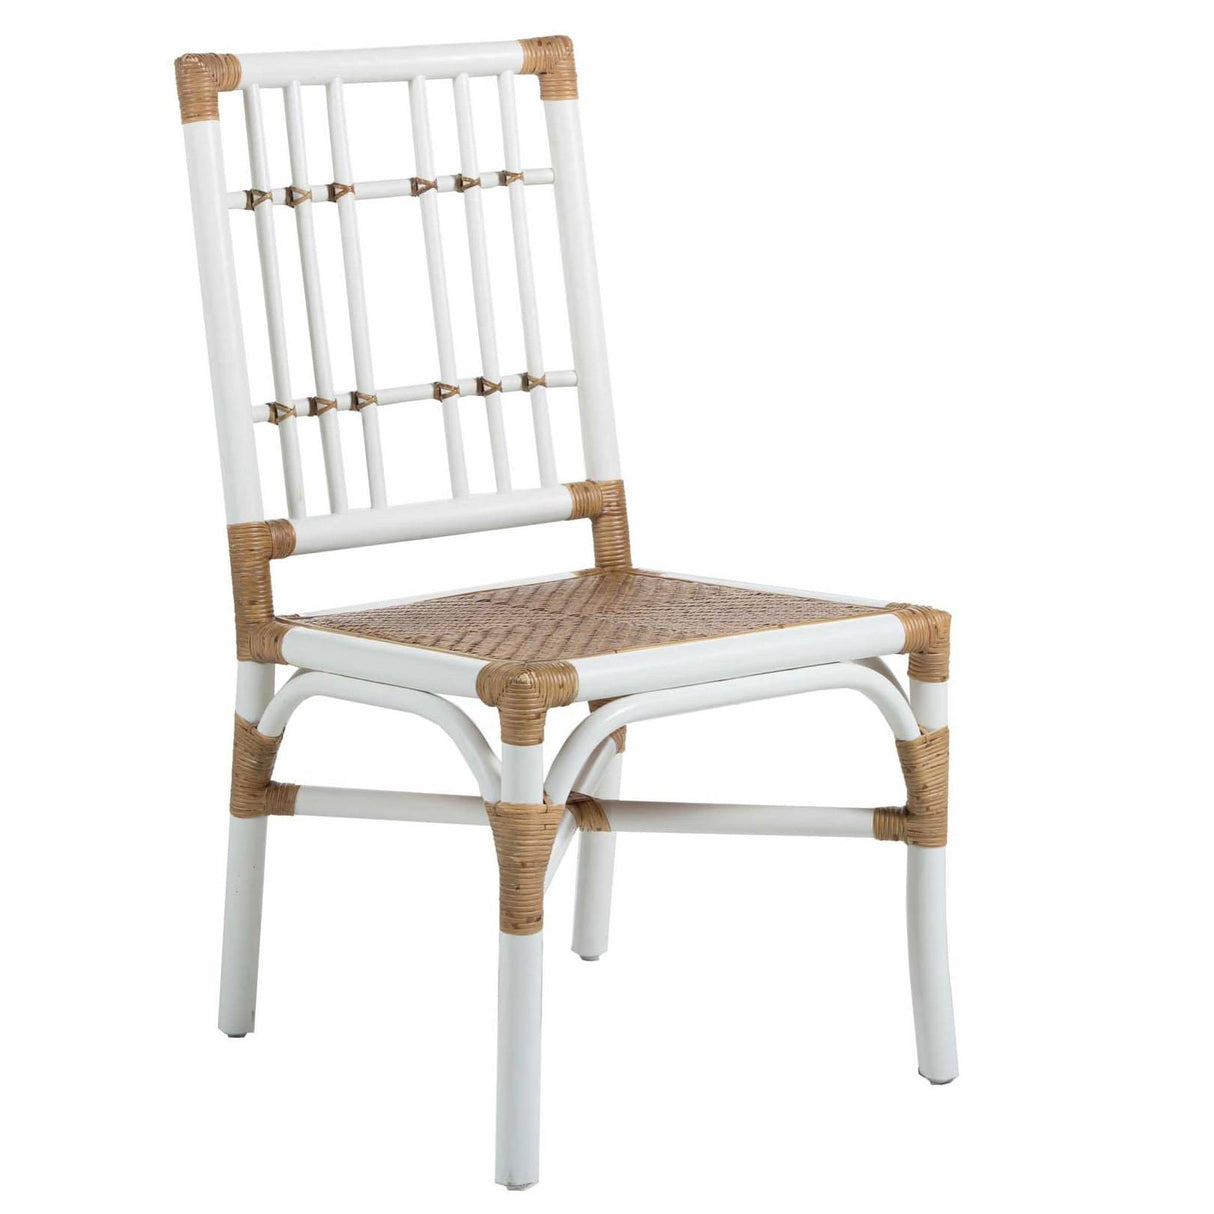 Gabby Bentley Chair - Set of 2 Furniture gabby-SCH-157230